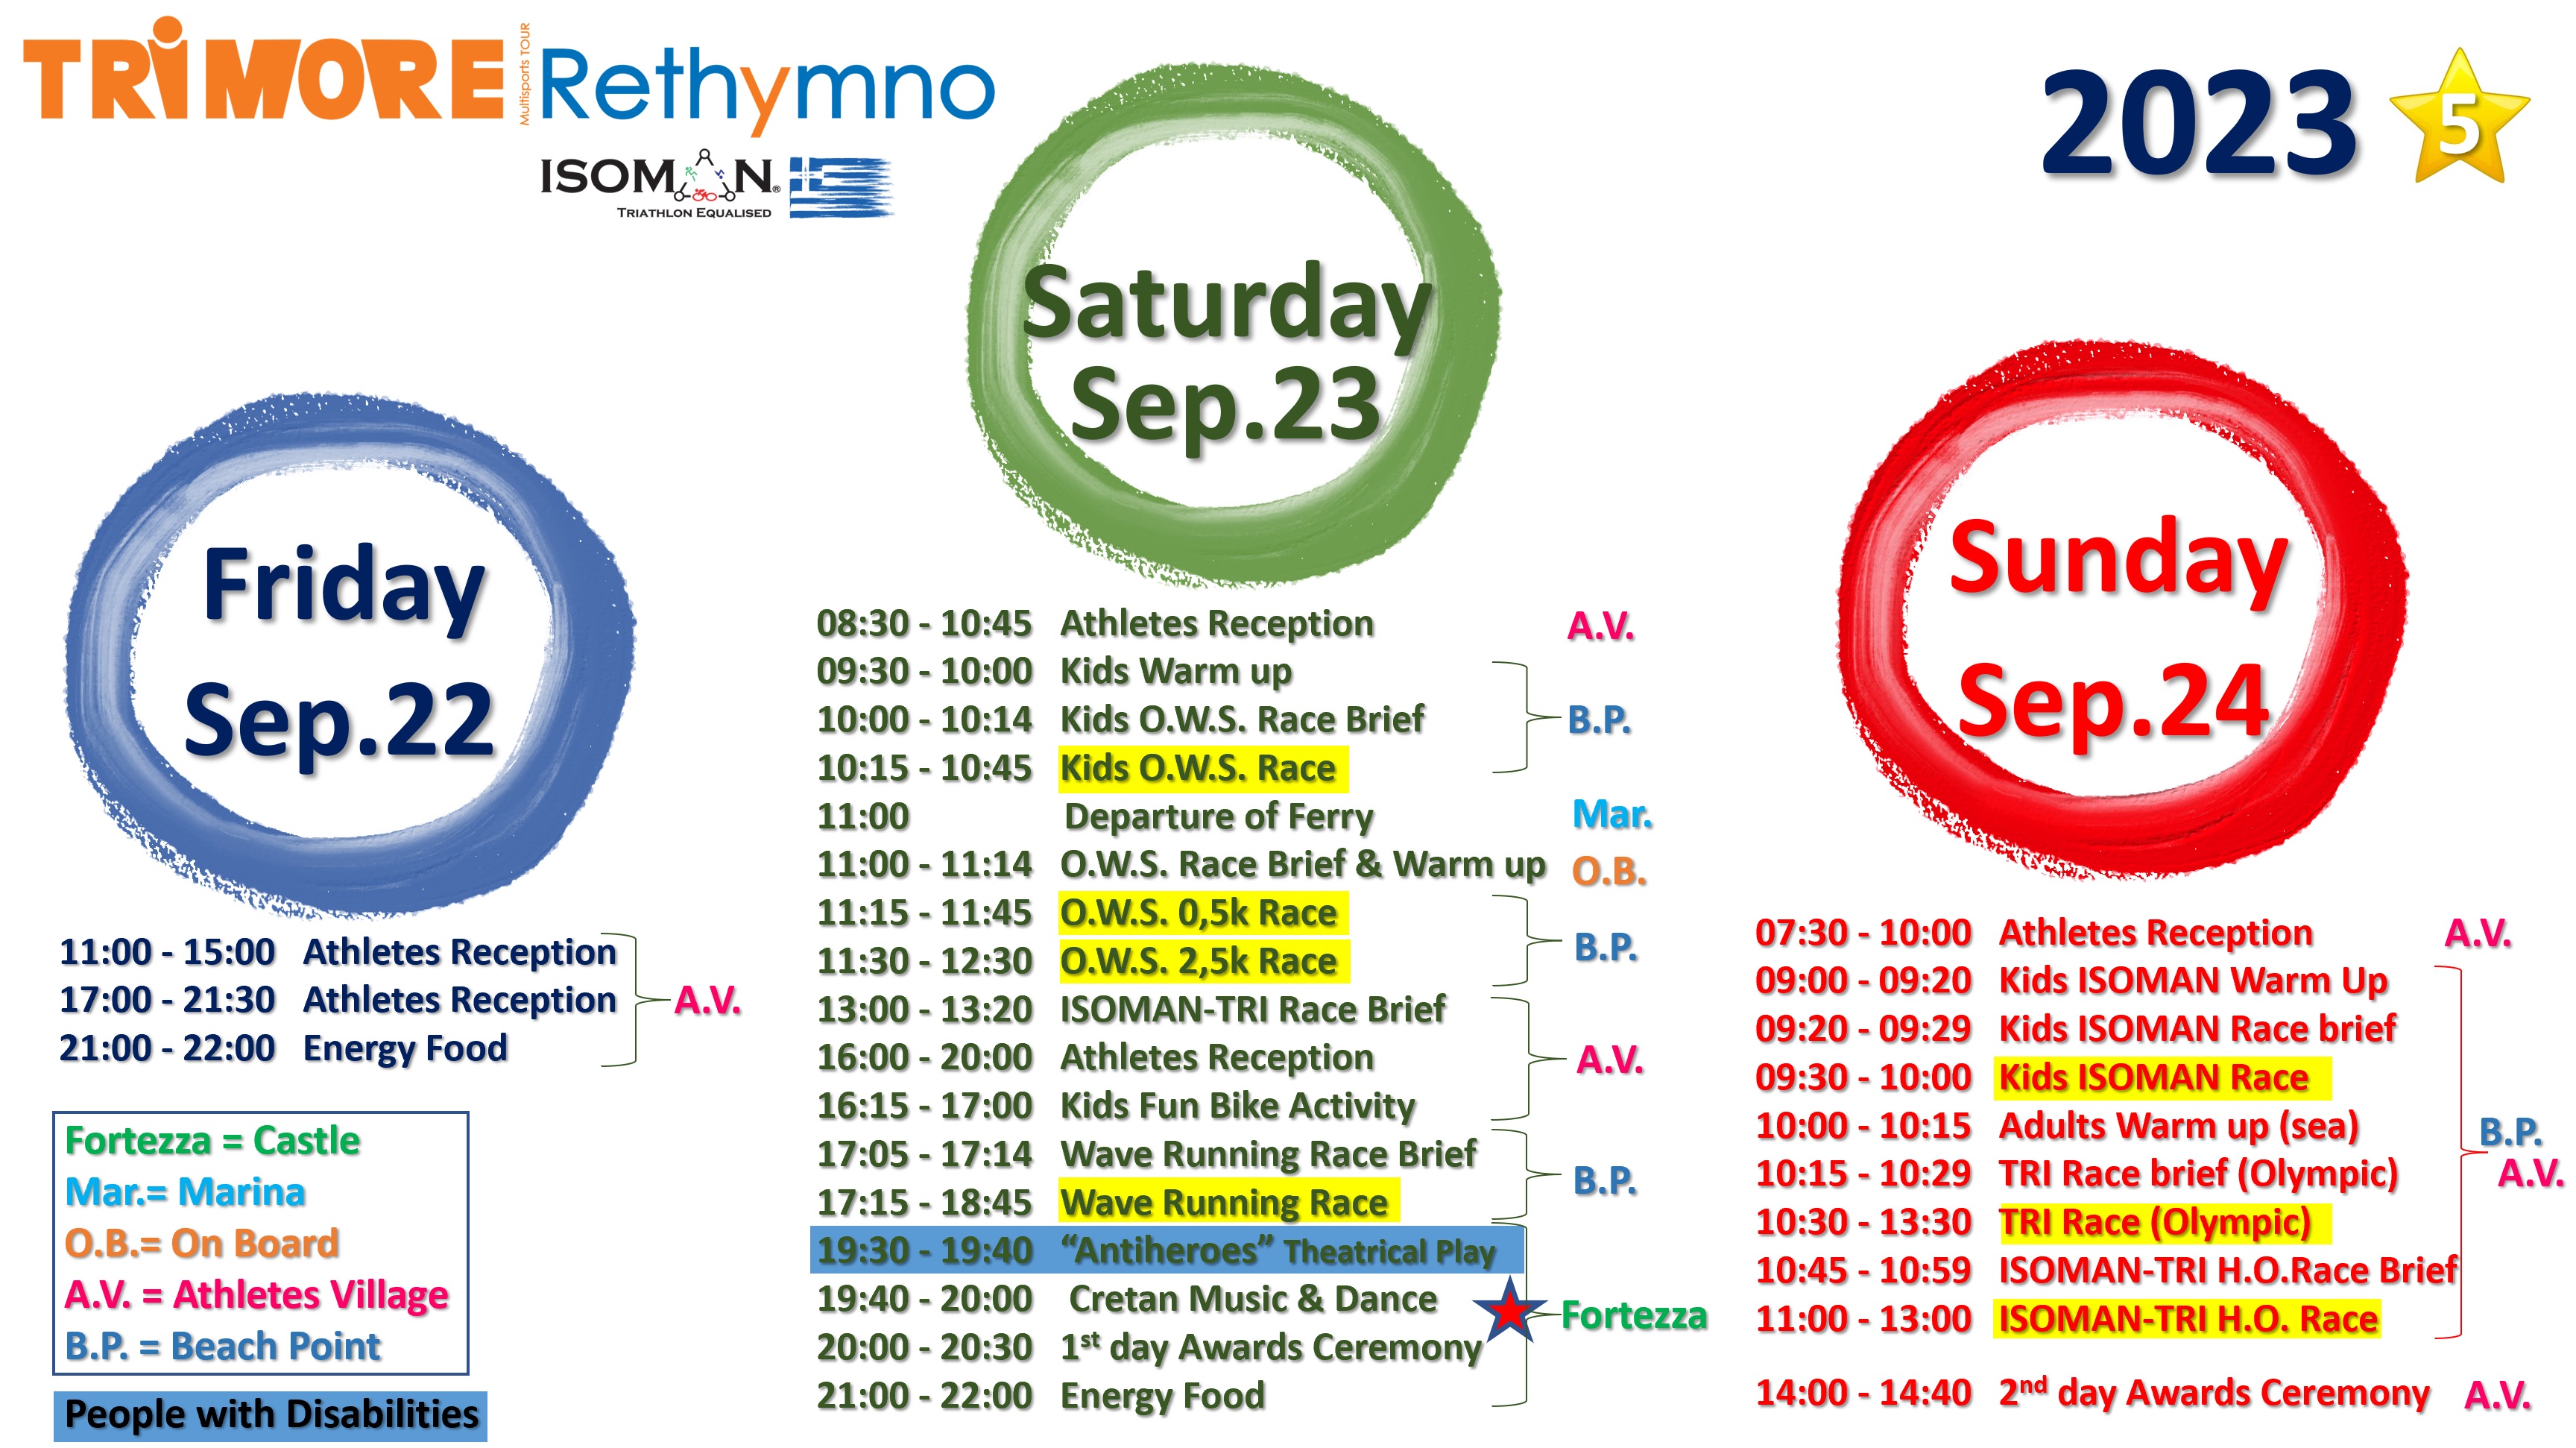 2023 Rethymno Events Schedule